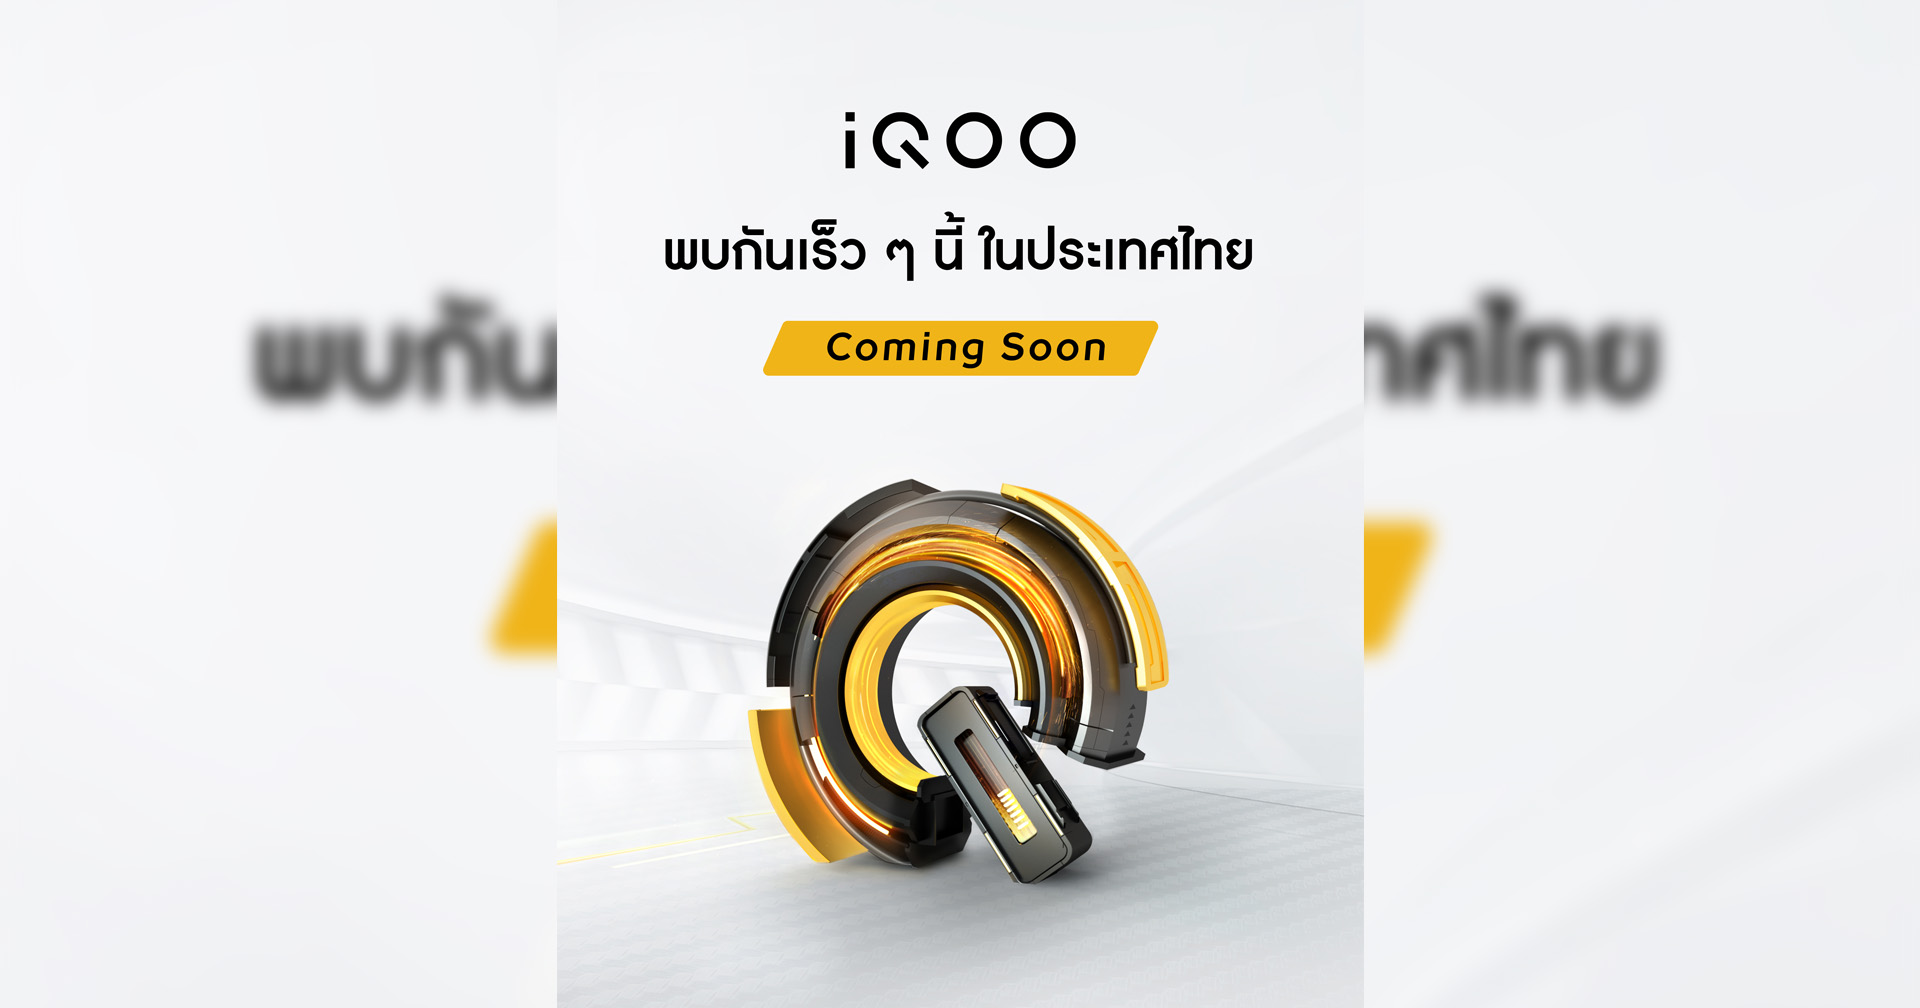 ปลายปีนี้มาแน่! vivo เผยทีเซอร์ iQOO สมาร์ตโฟนสายโหด สเปกแน่น เตรียมวางจำหน่ายในไทย เร็ว ๆ นี้